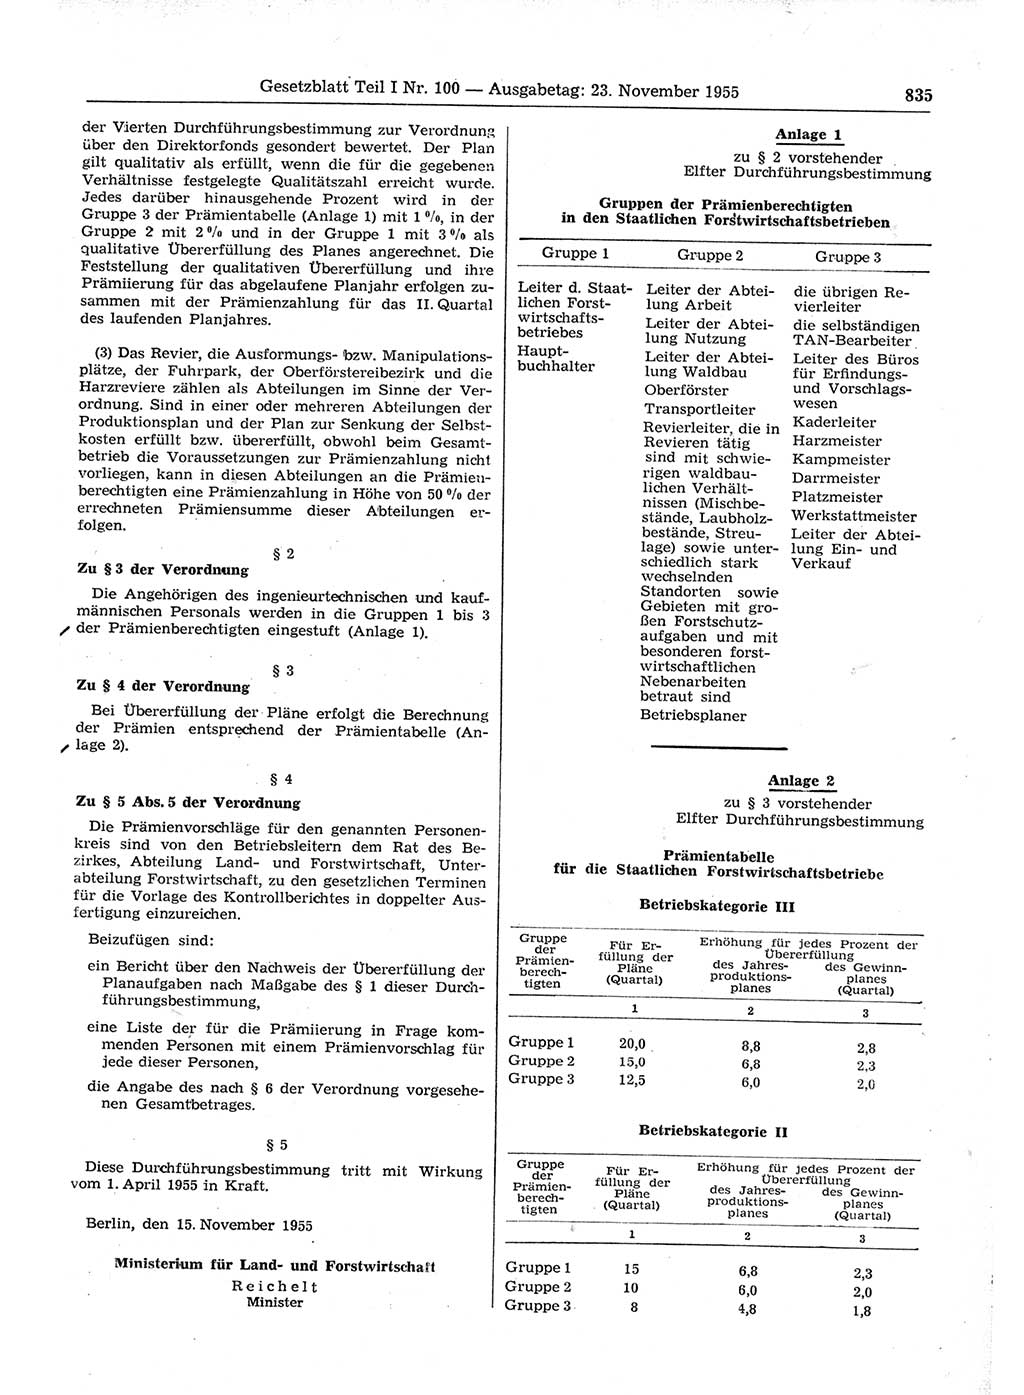 Gesetzblatt (GBl.) der Deutschen Demokratischen Republik (DDR) Teil Ⅰ 1955, Seite 835 (GBl. DDR Ⅰ 1955, S. 835)